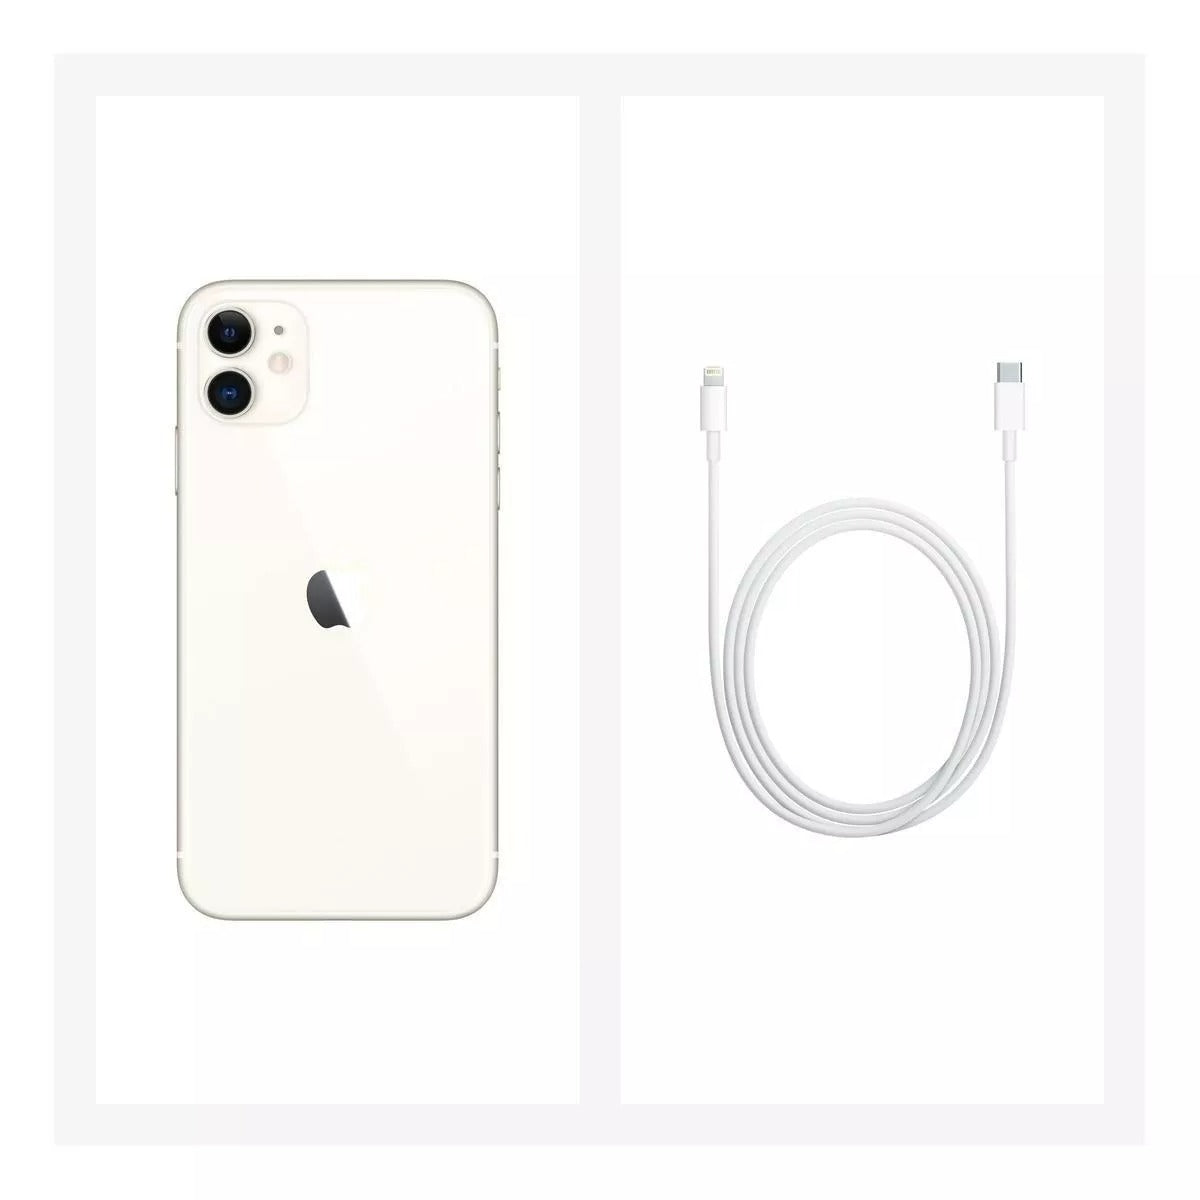 iPhone 11 (128 Gb) - Branco - Lacrado com garantia de 1 ano pela Apple